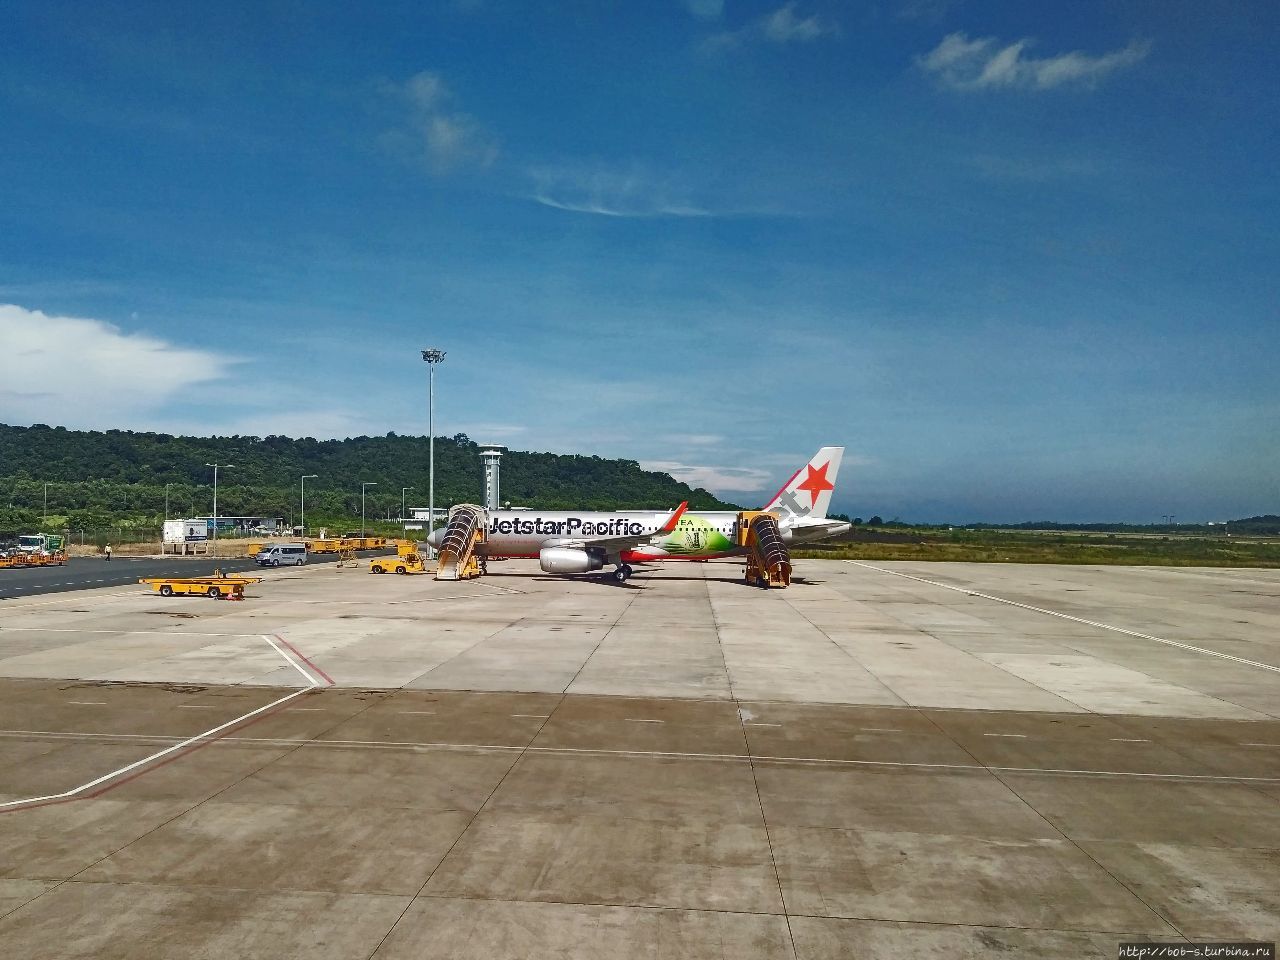 Аэропорт Дуонг Донг.  Фукуок встретил солнечно. Чего не скажу о дальнейшем.... Дуонг-Донг, Вьетнам